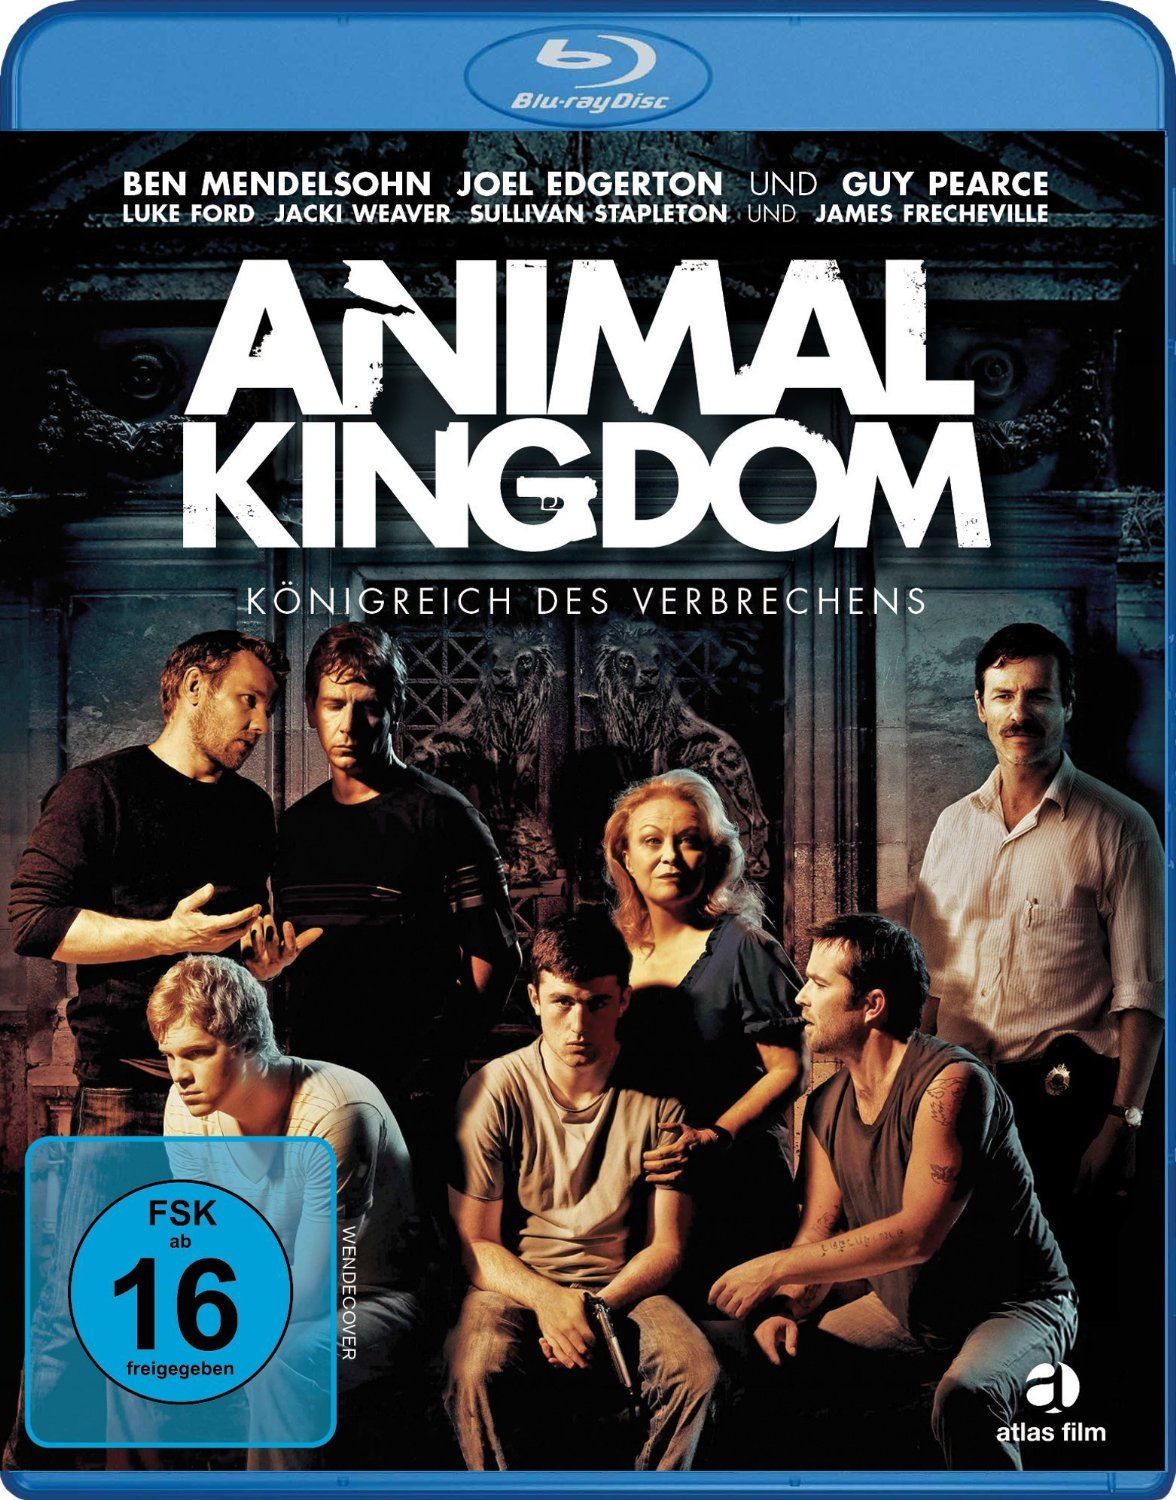 Animal Kingdom - Königreich des Verbrechens (BLURAY)